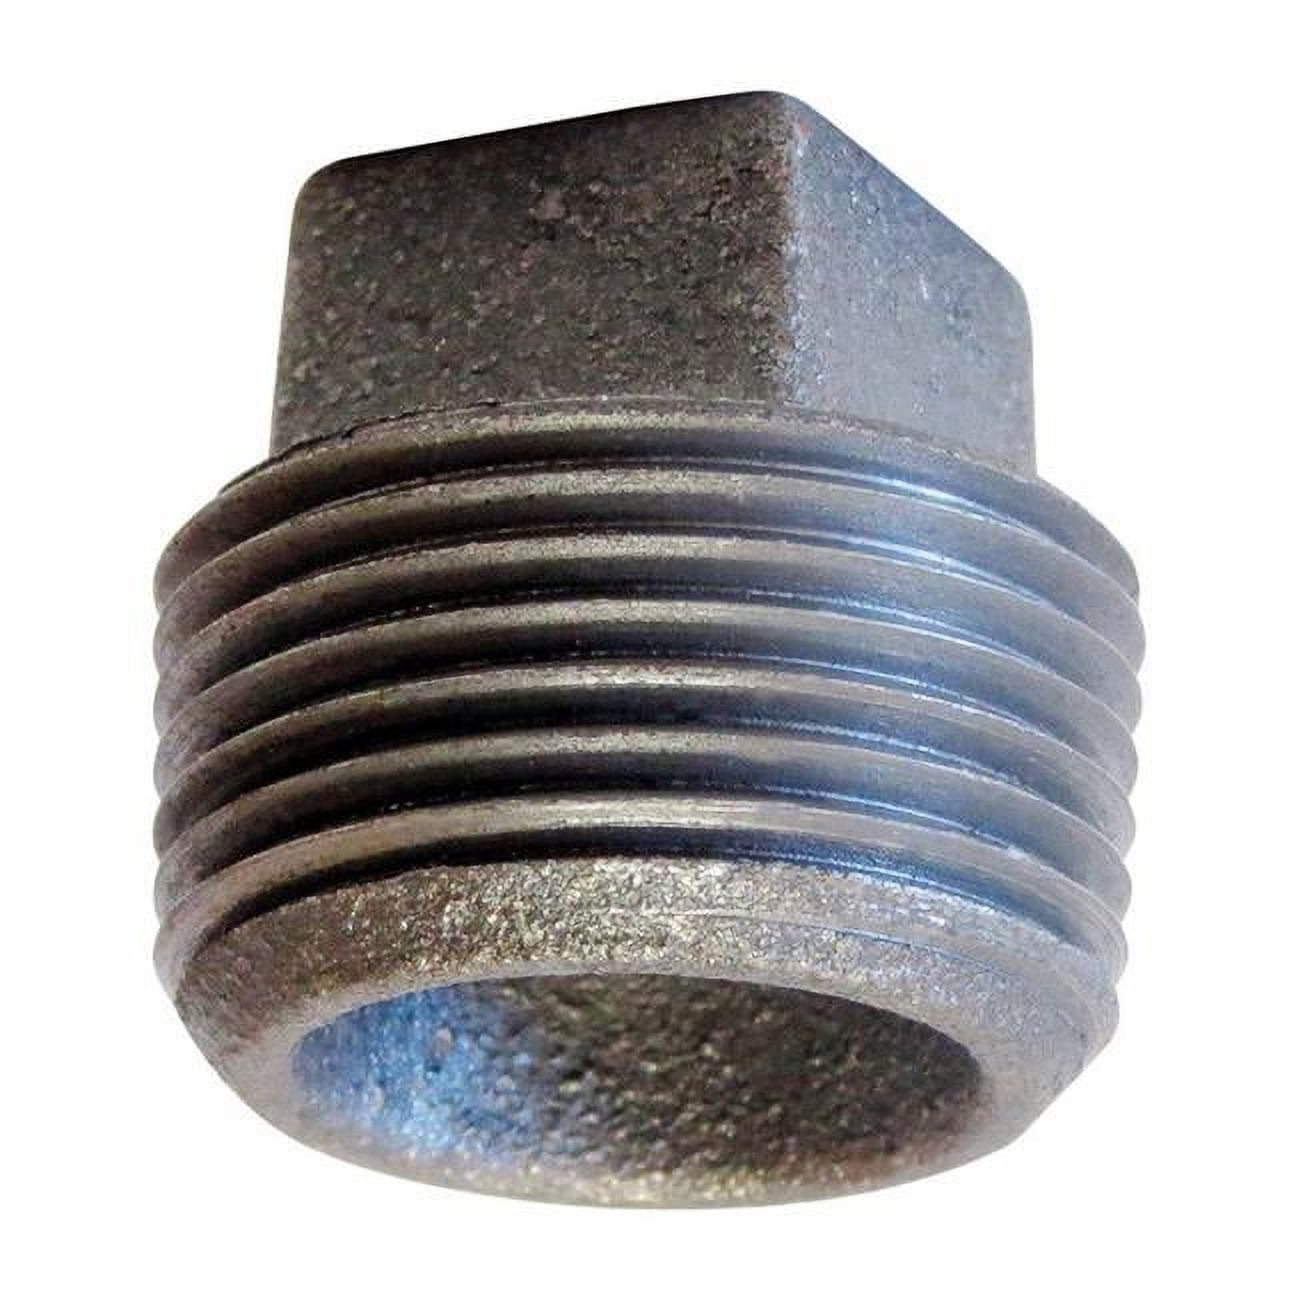 Anvil 4919882 4 In. Mpt Cast Iron Cored Square Head Plug